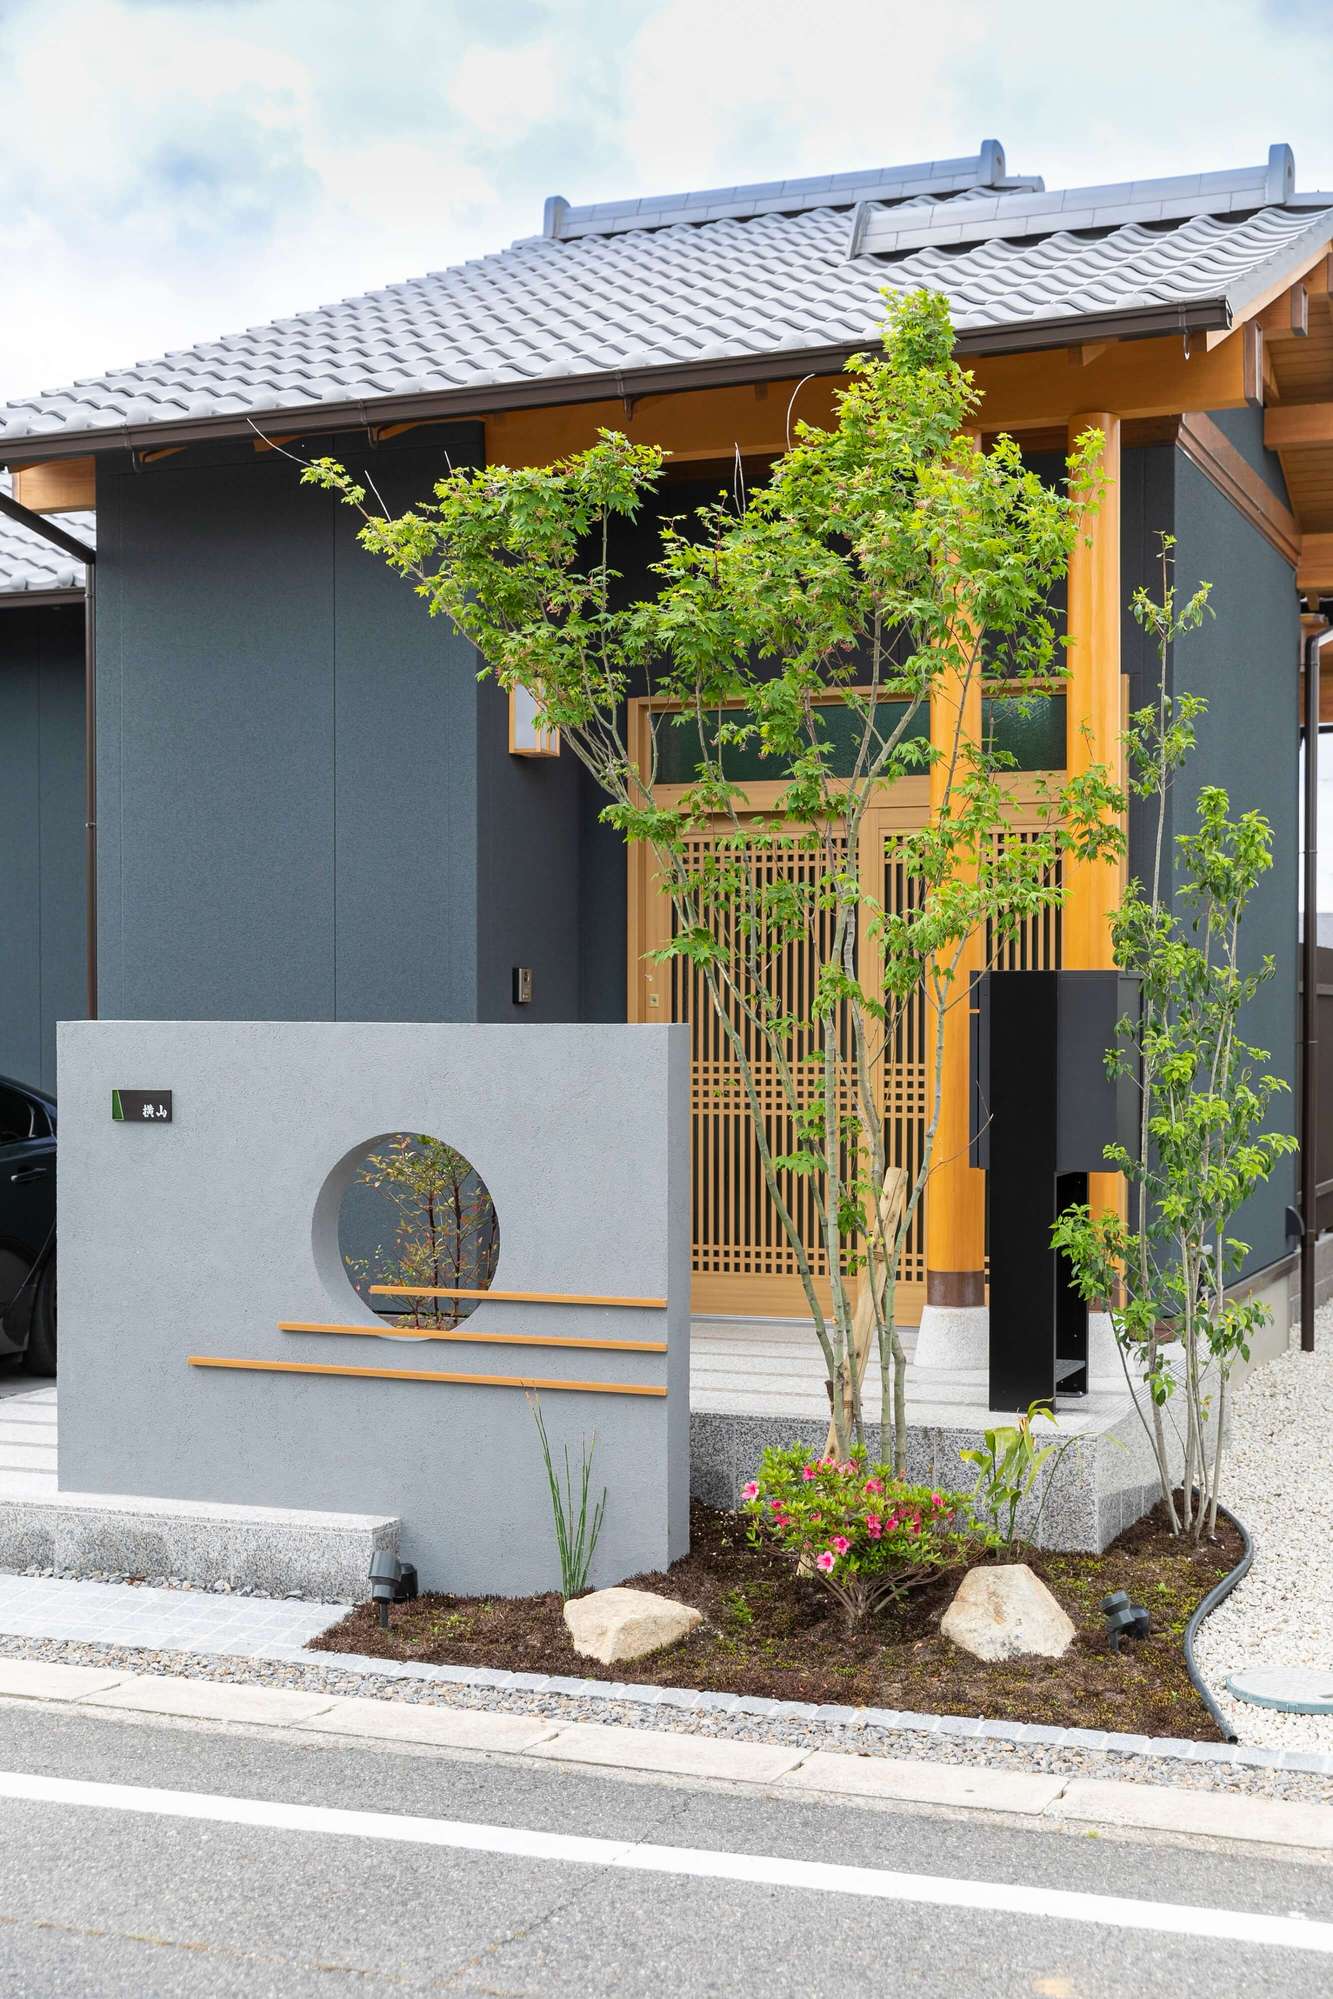 愛知県 刈谷市 和風 平屋 新築 新築外構 坪庭 和モダン おしゃれ かっこいい デザイン